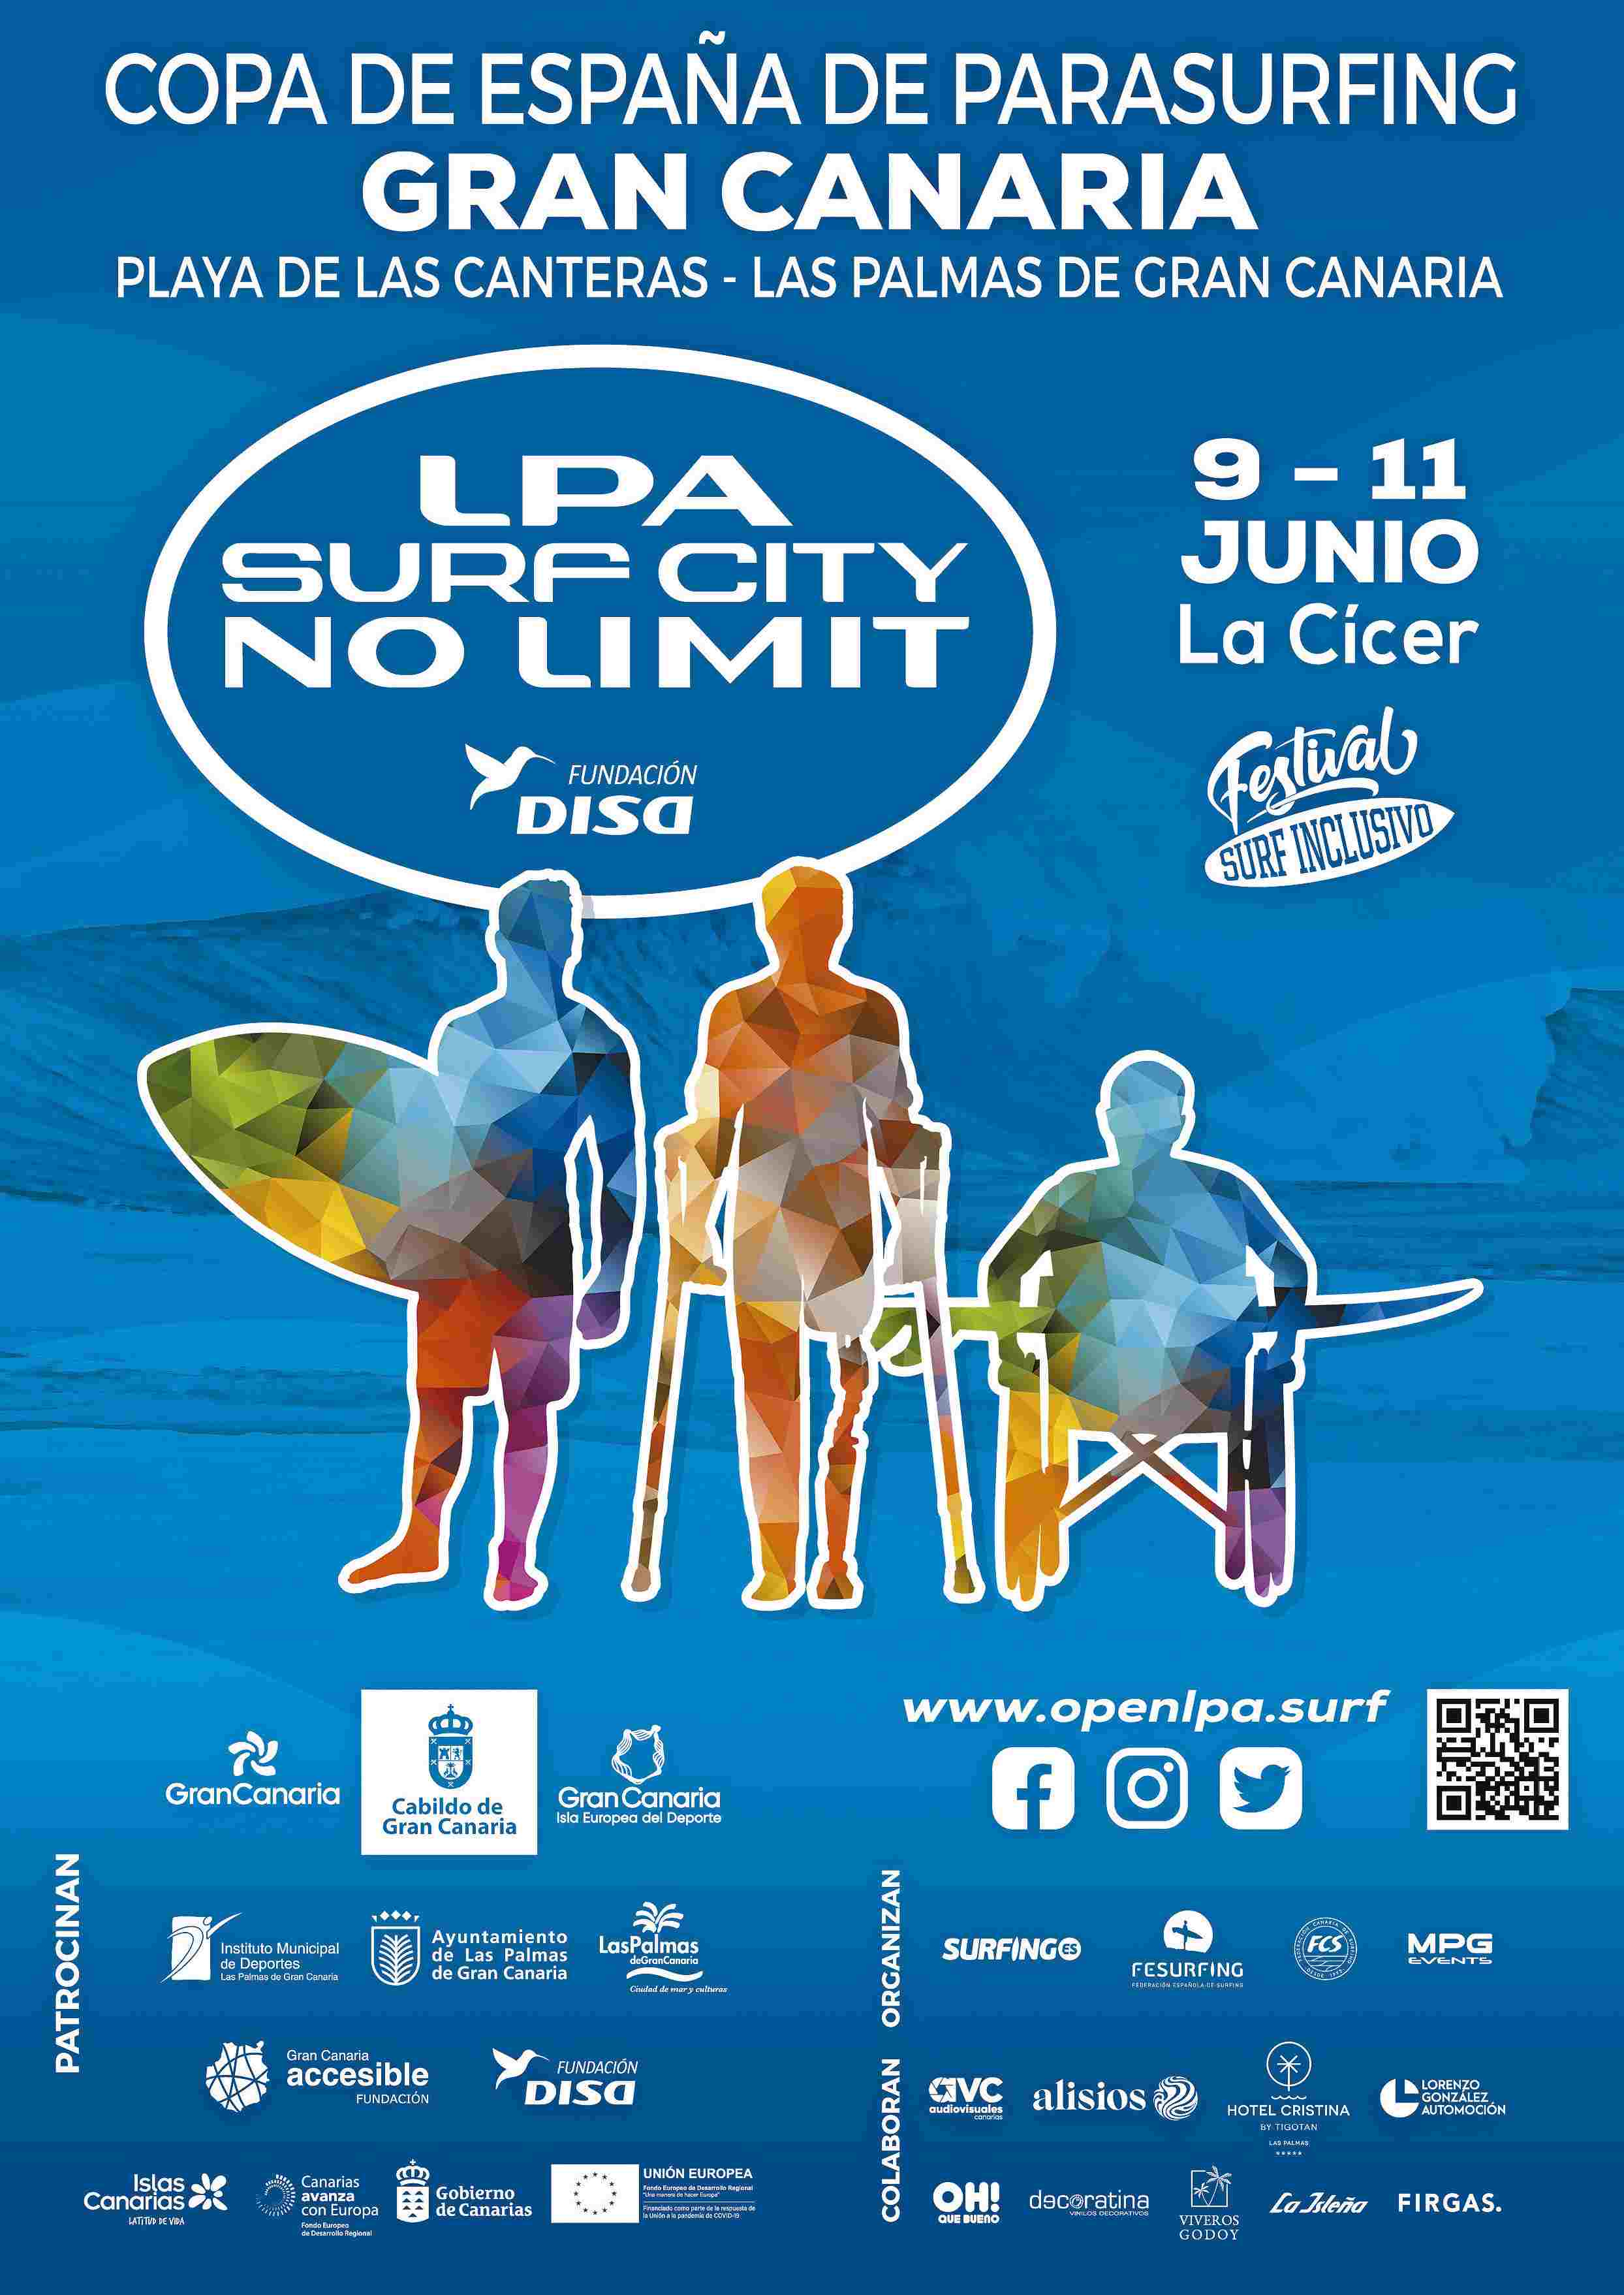 SURFING ADAPTADO LPA SURF CITY NO LIMIT FUNDACIÓN DISA  - NO FEDERADOS PENINSULARES IMPRESCINDIBLE LICENCIA - Inscríbete